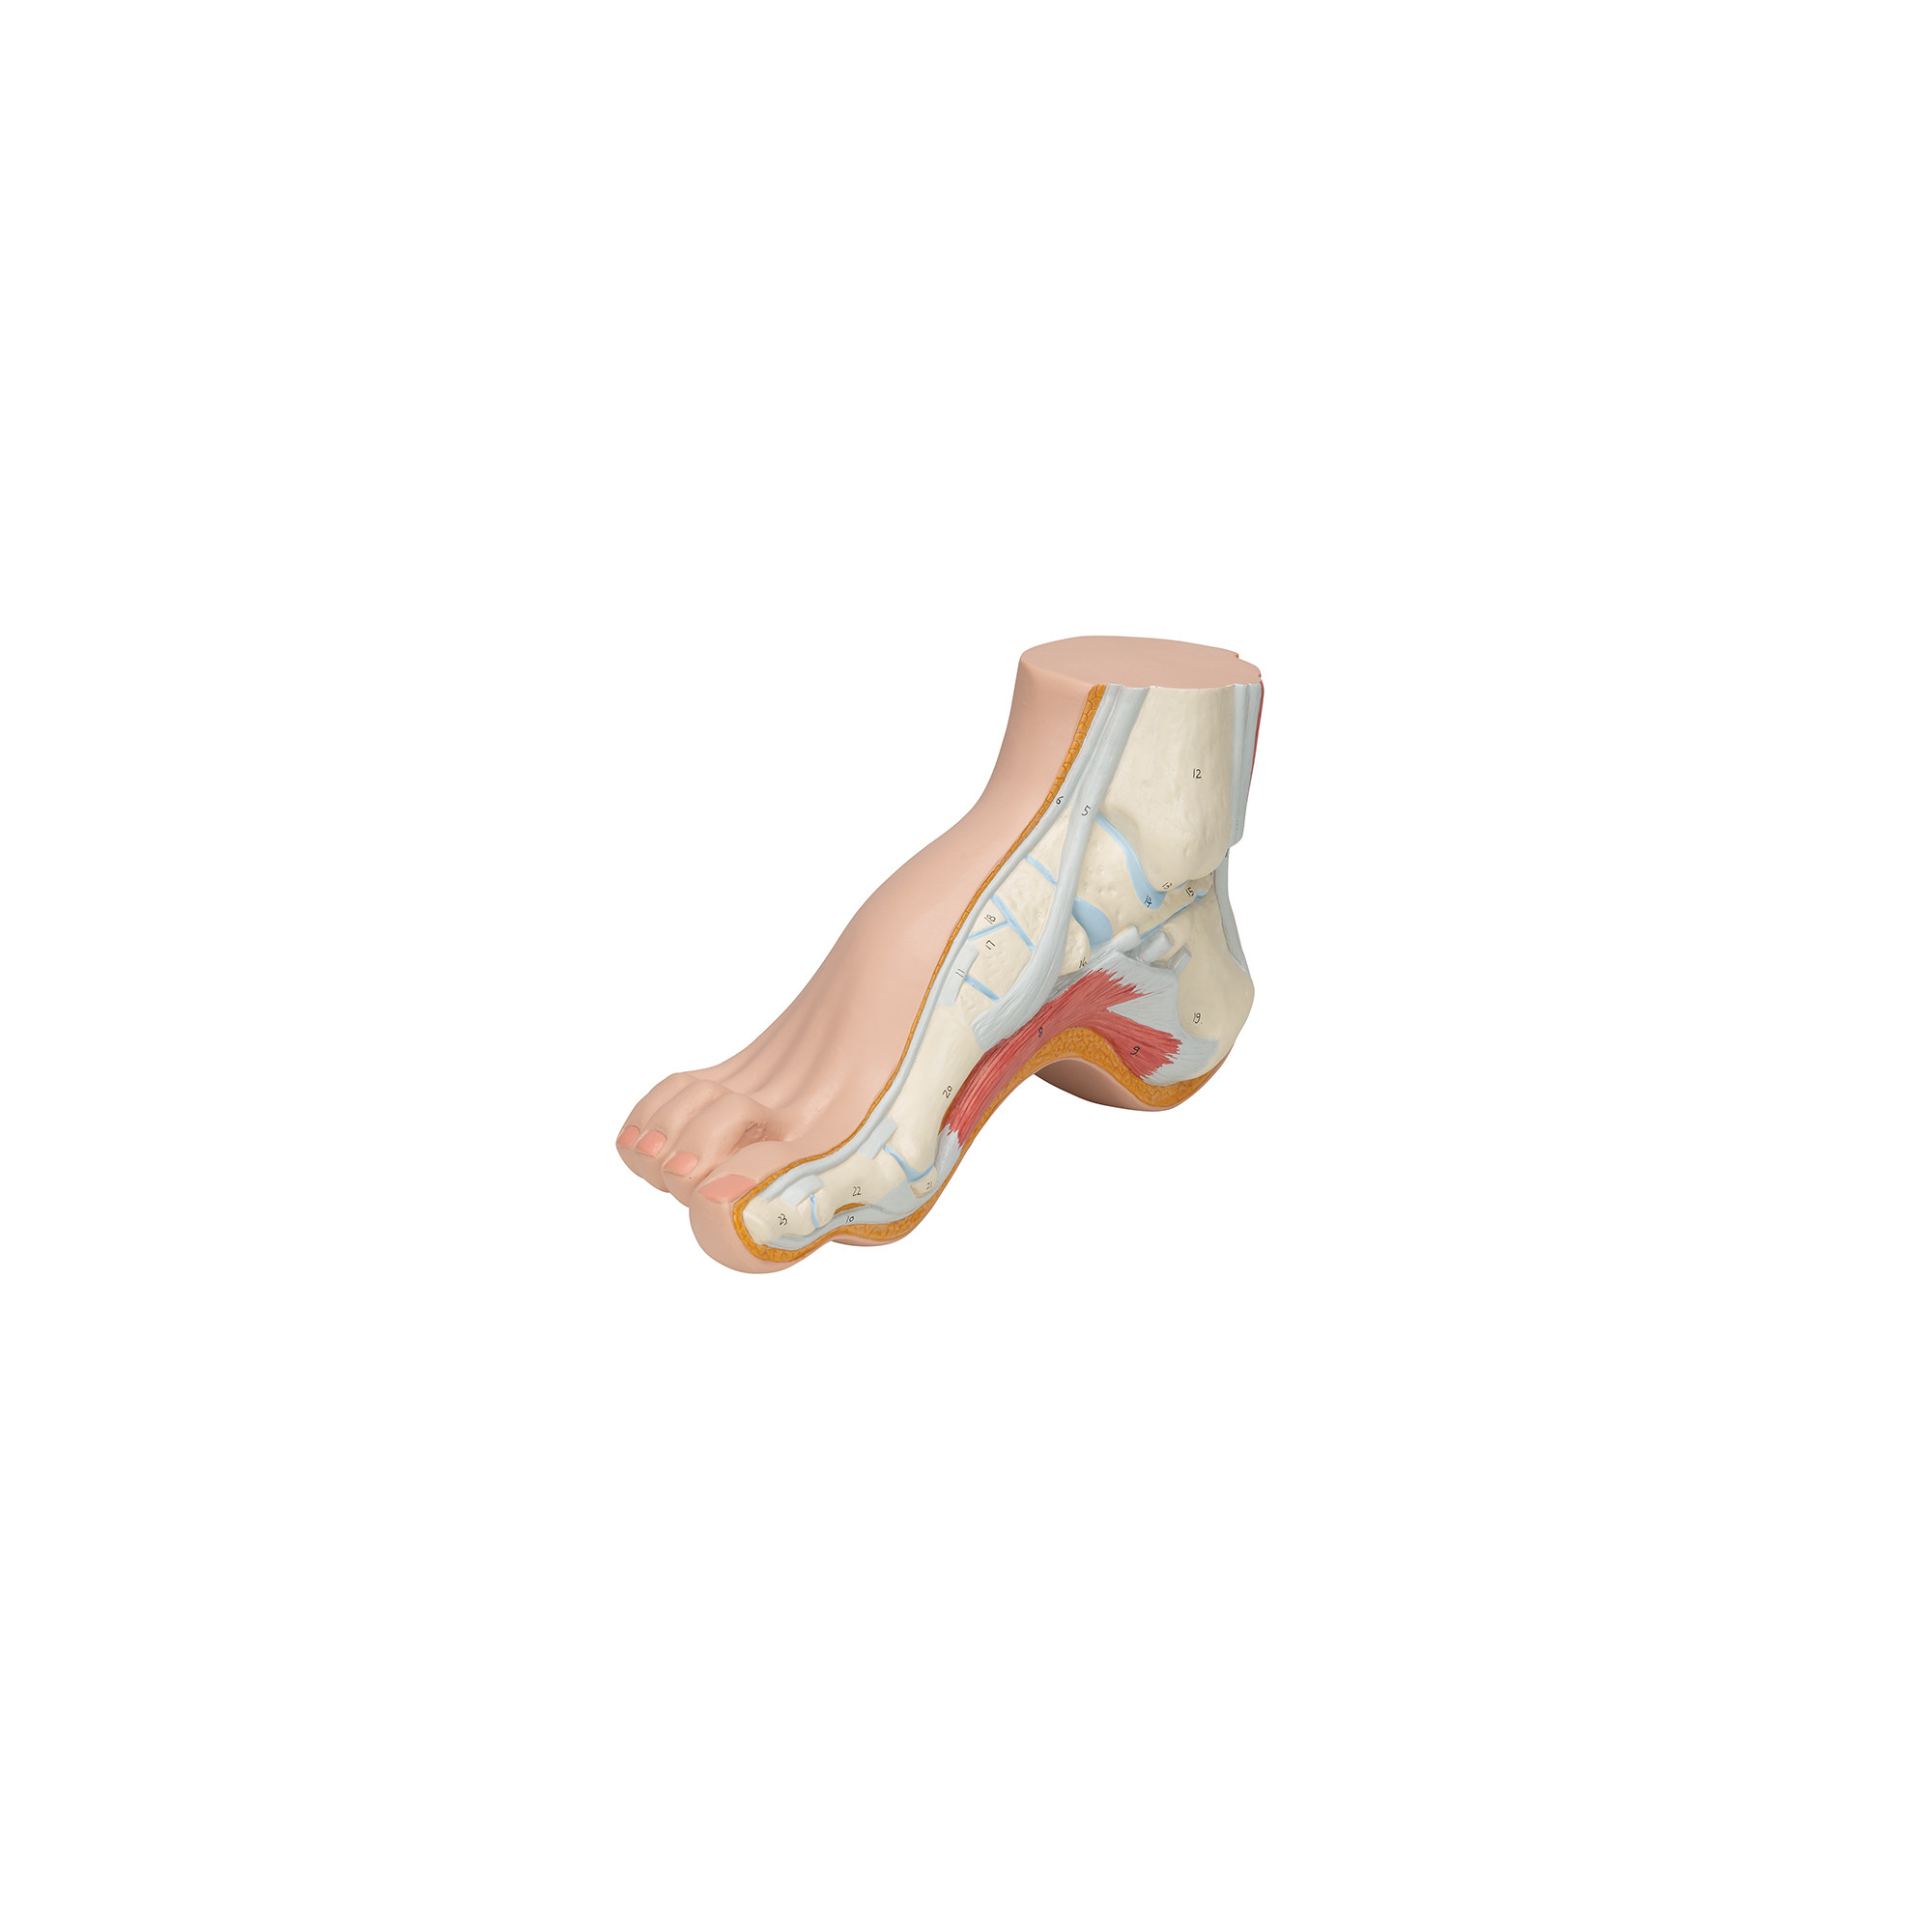 Squelette d'un pied creux (Pes Cavus)